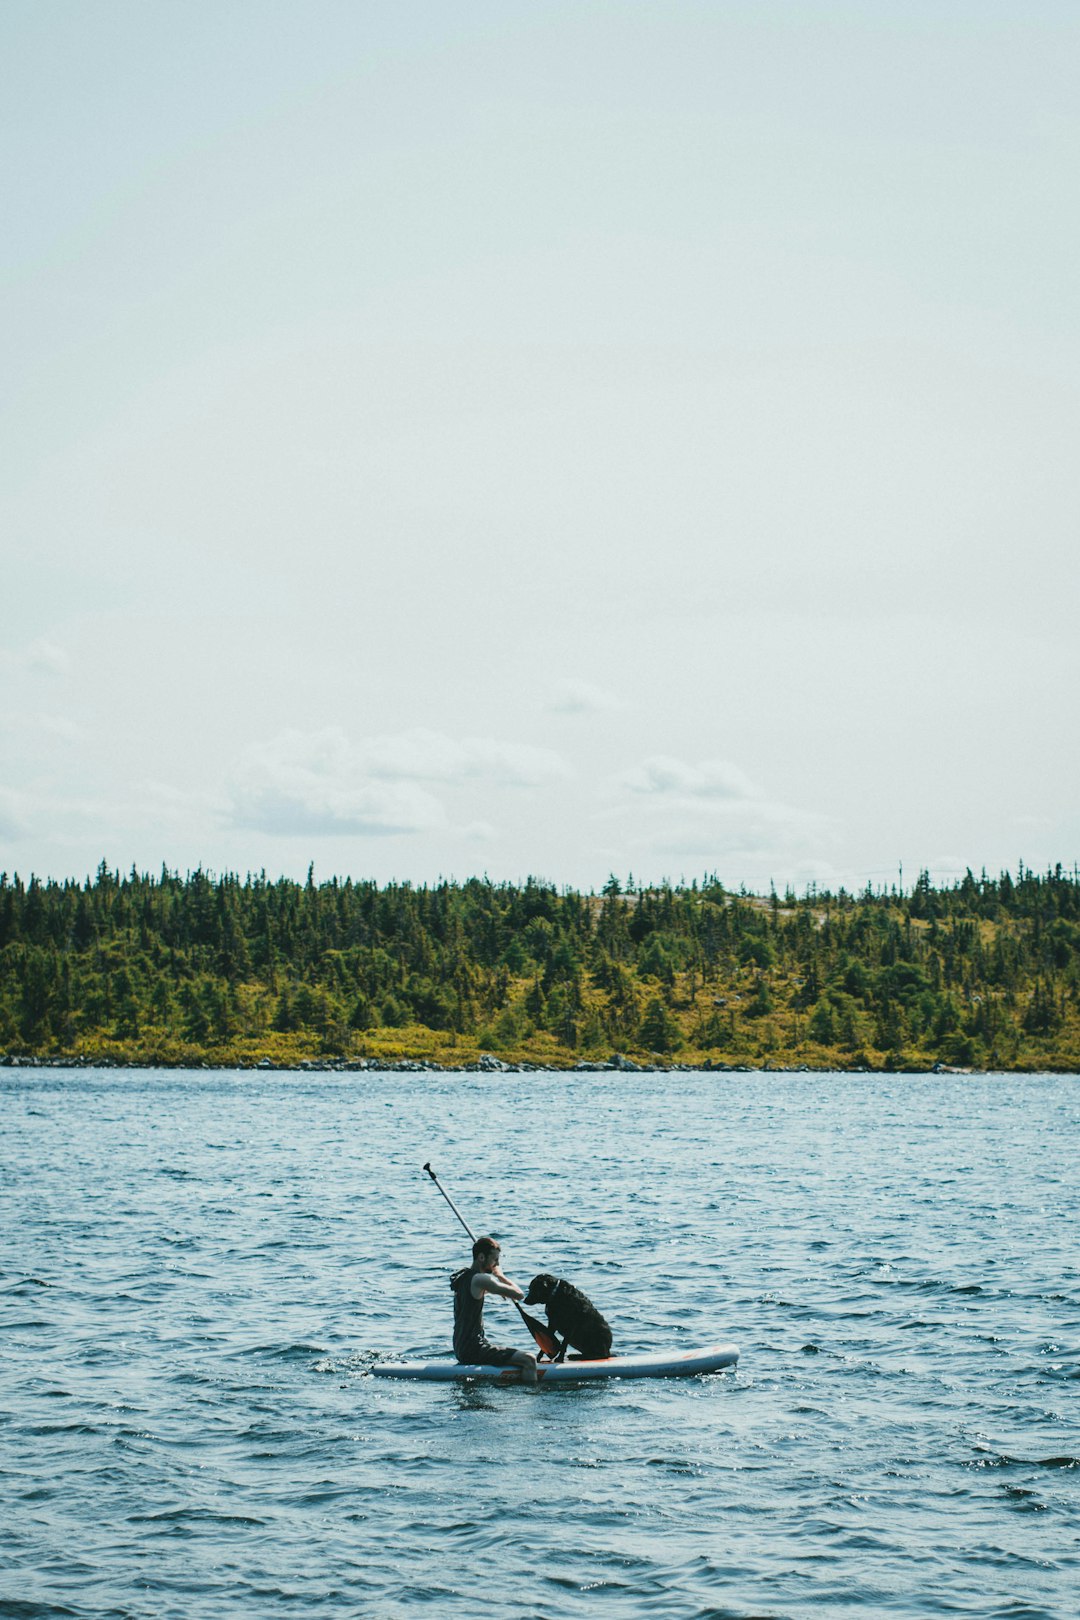 person fishing on lake during daytime